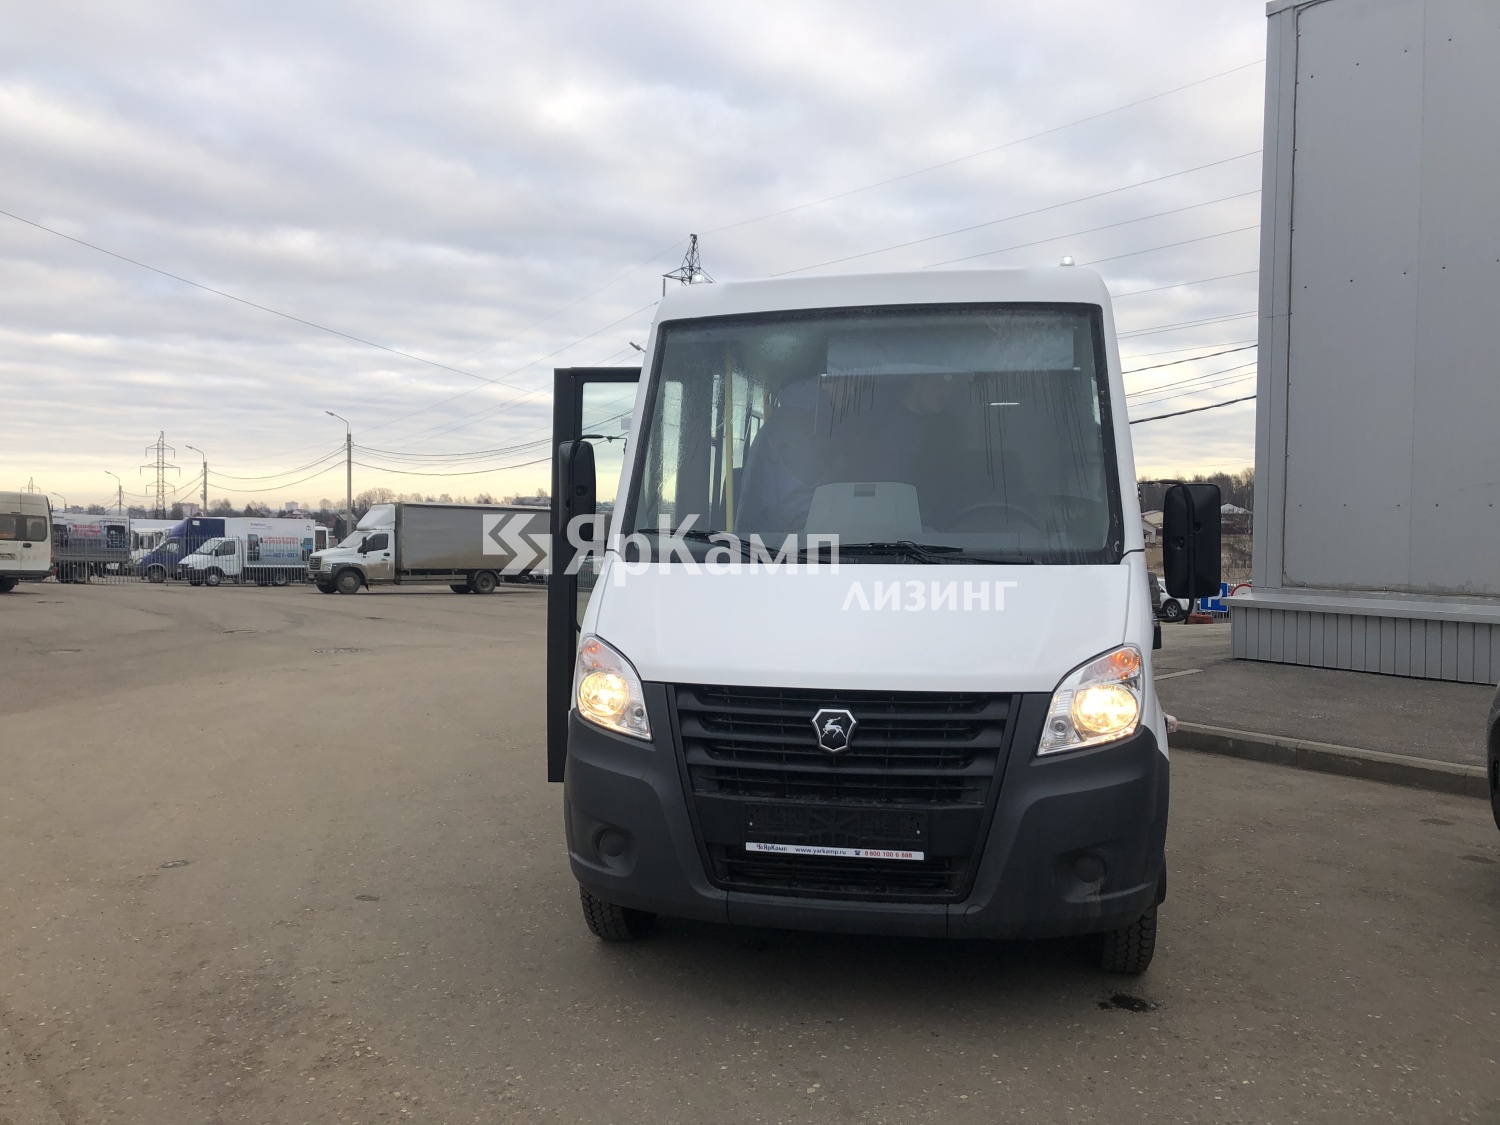 "ЯрКамп-Лизинг" произвел передачу автобуса ГАЗ-А60R42 в финансовую аренду